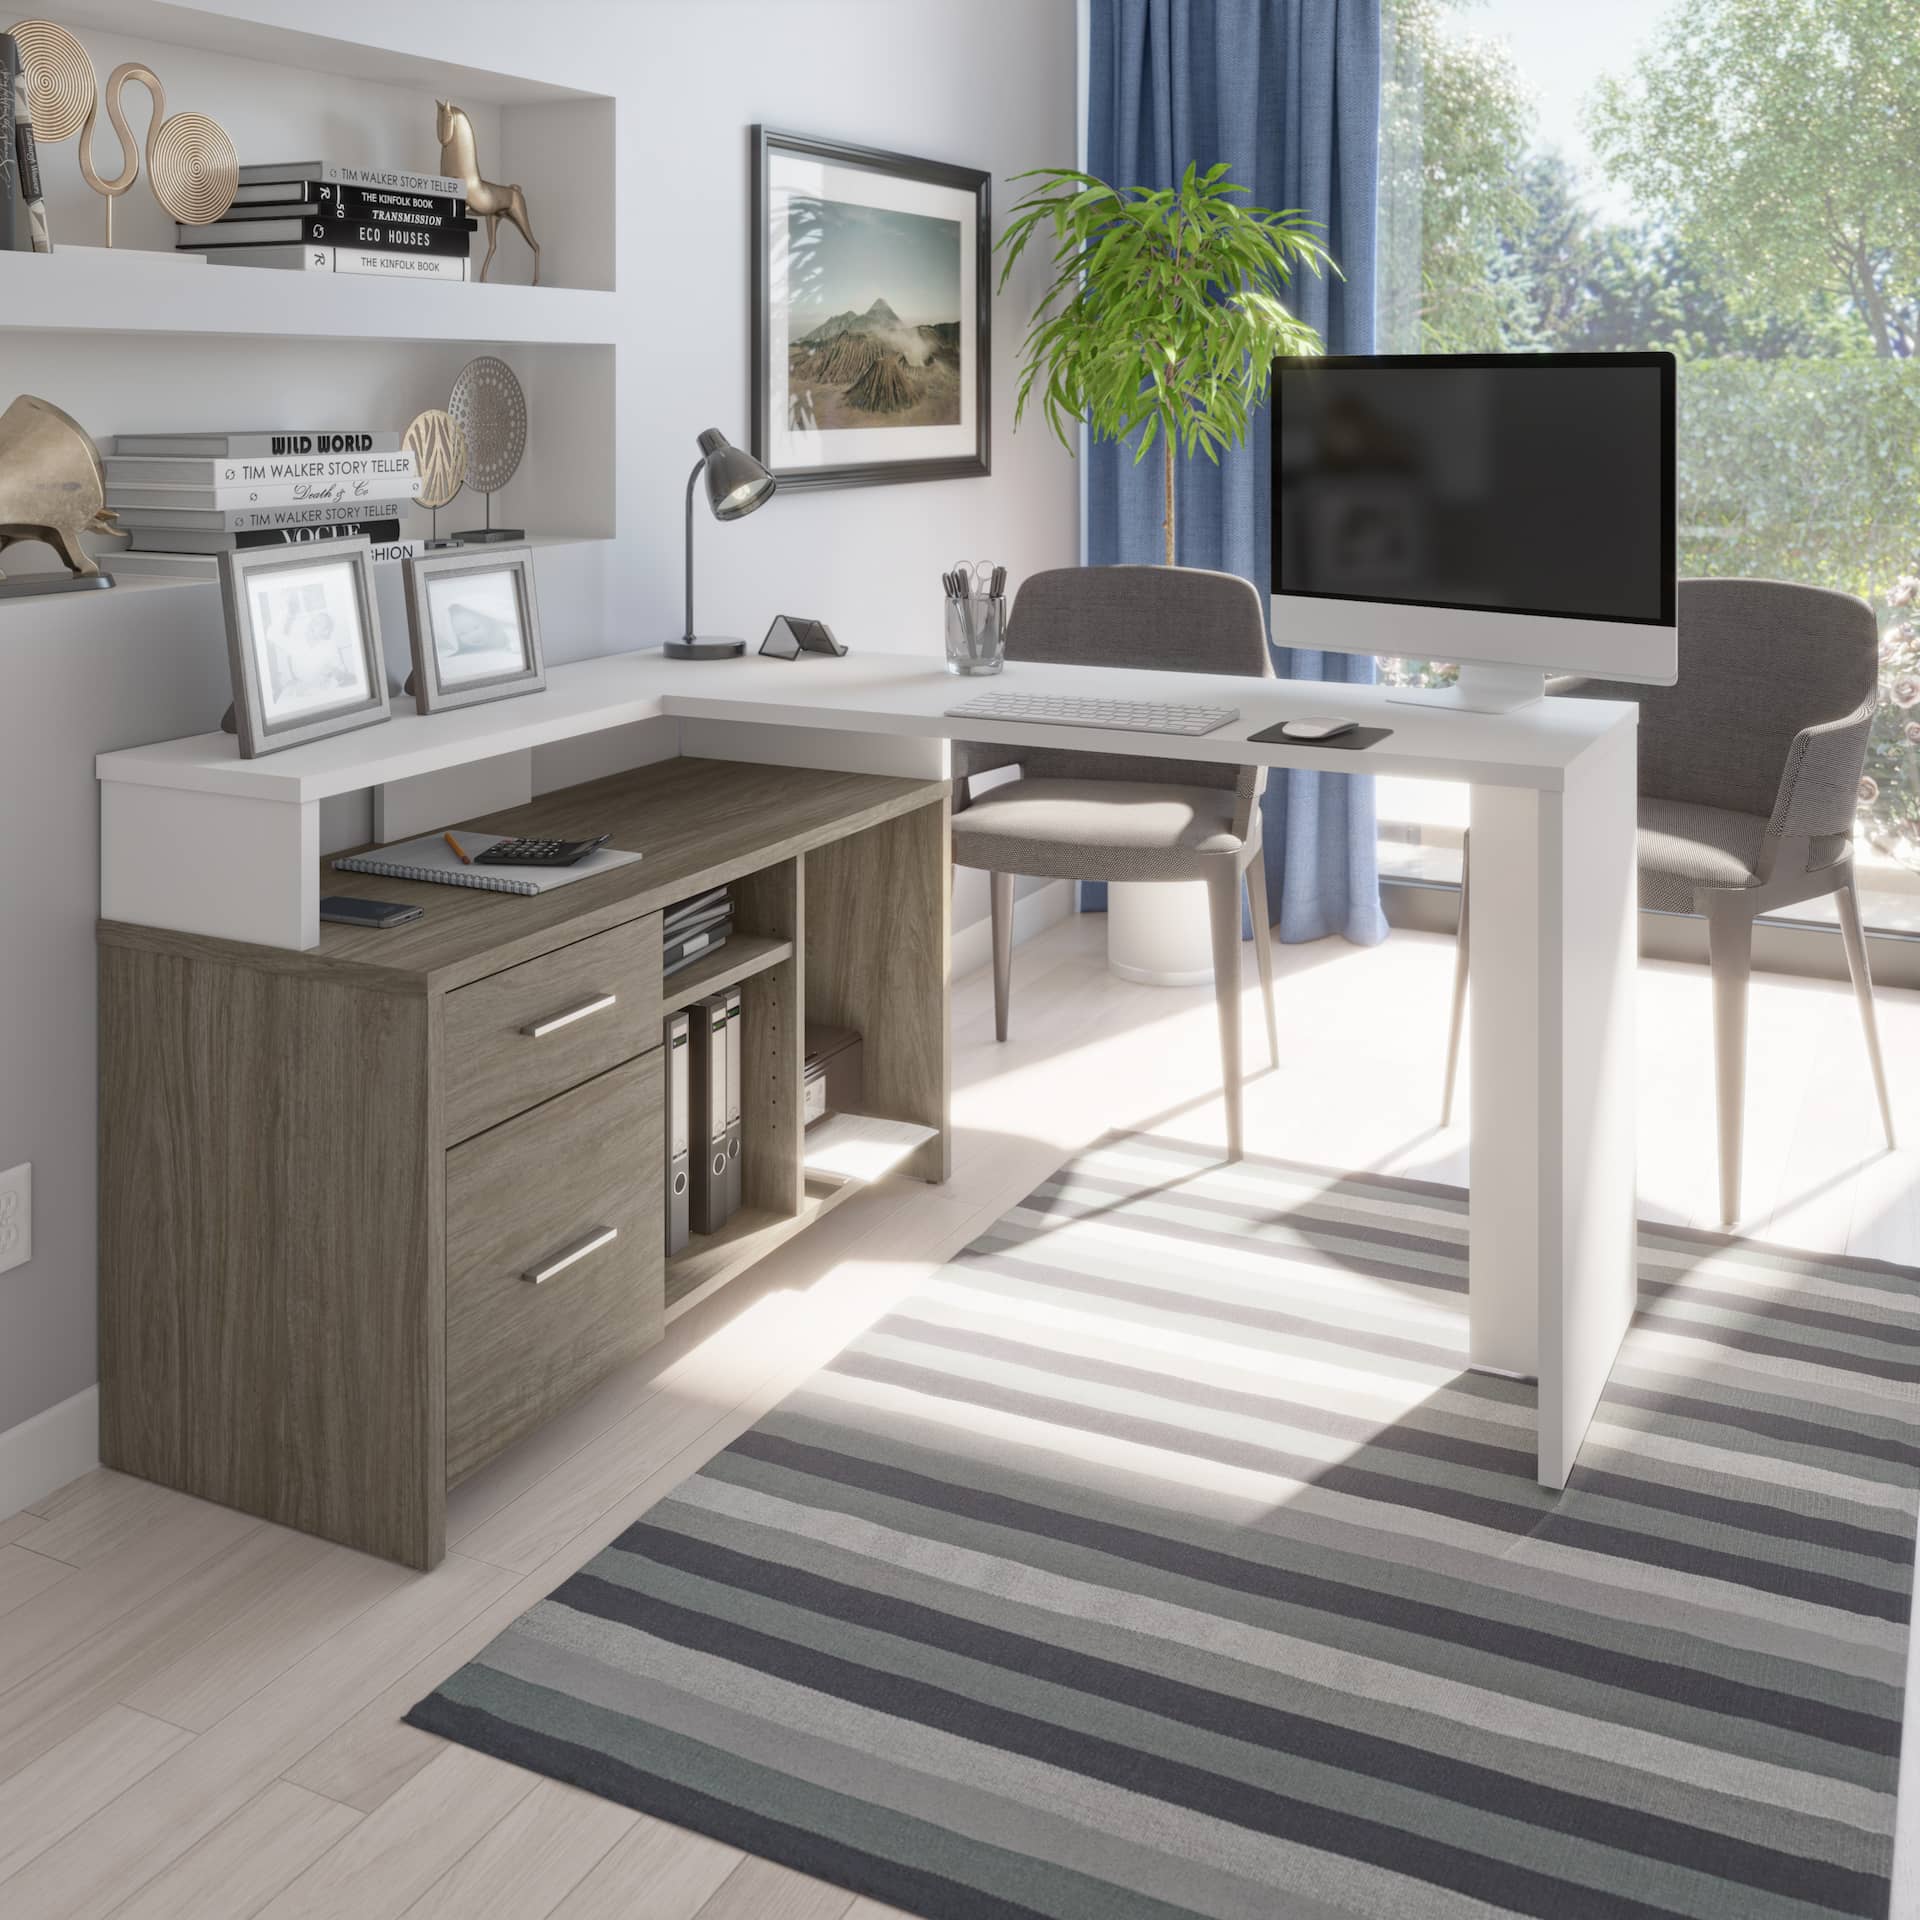 4 façons de créer un espace de travail productif avec du mobilier de bureau abordable